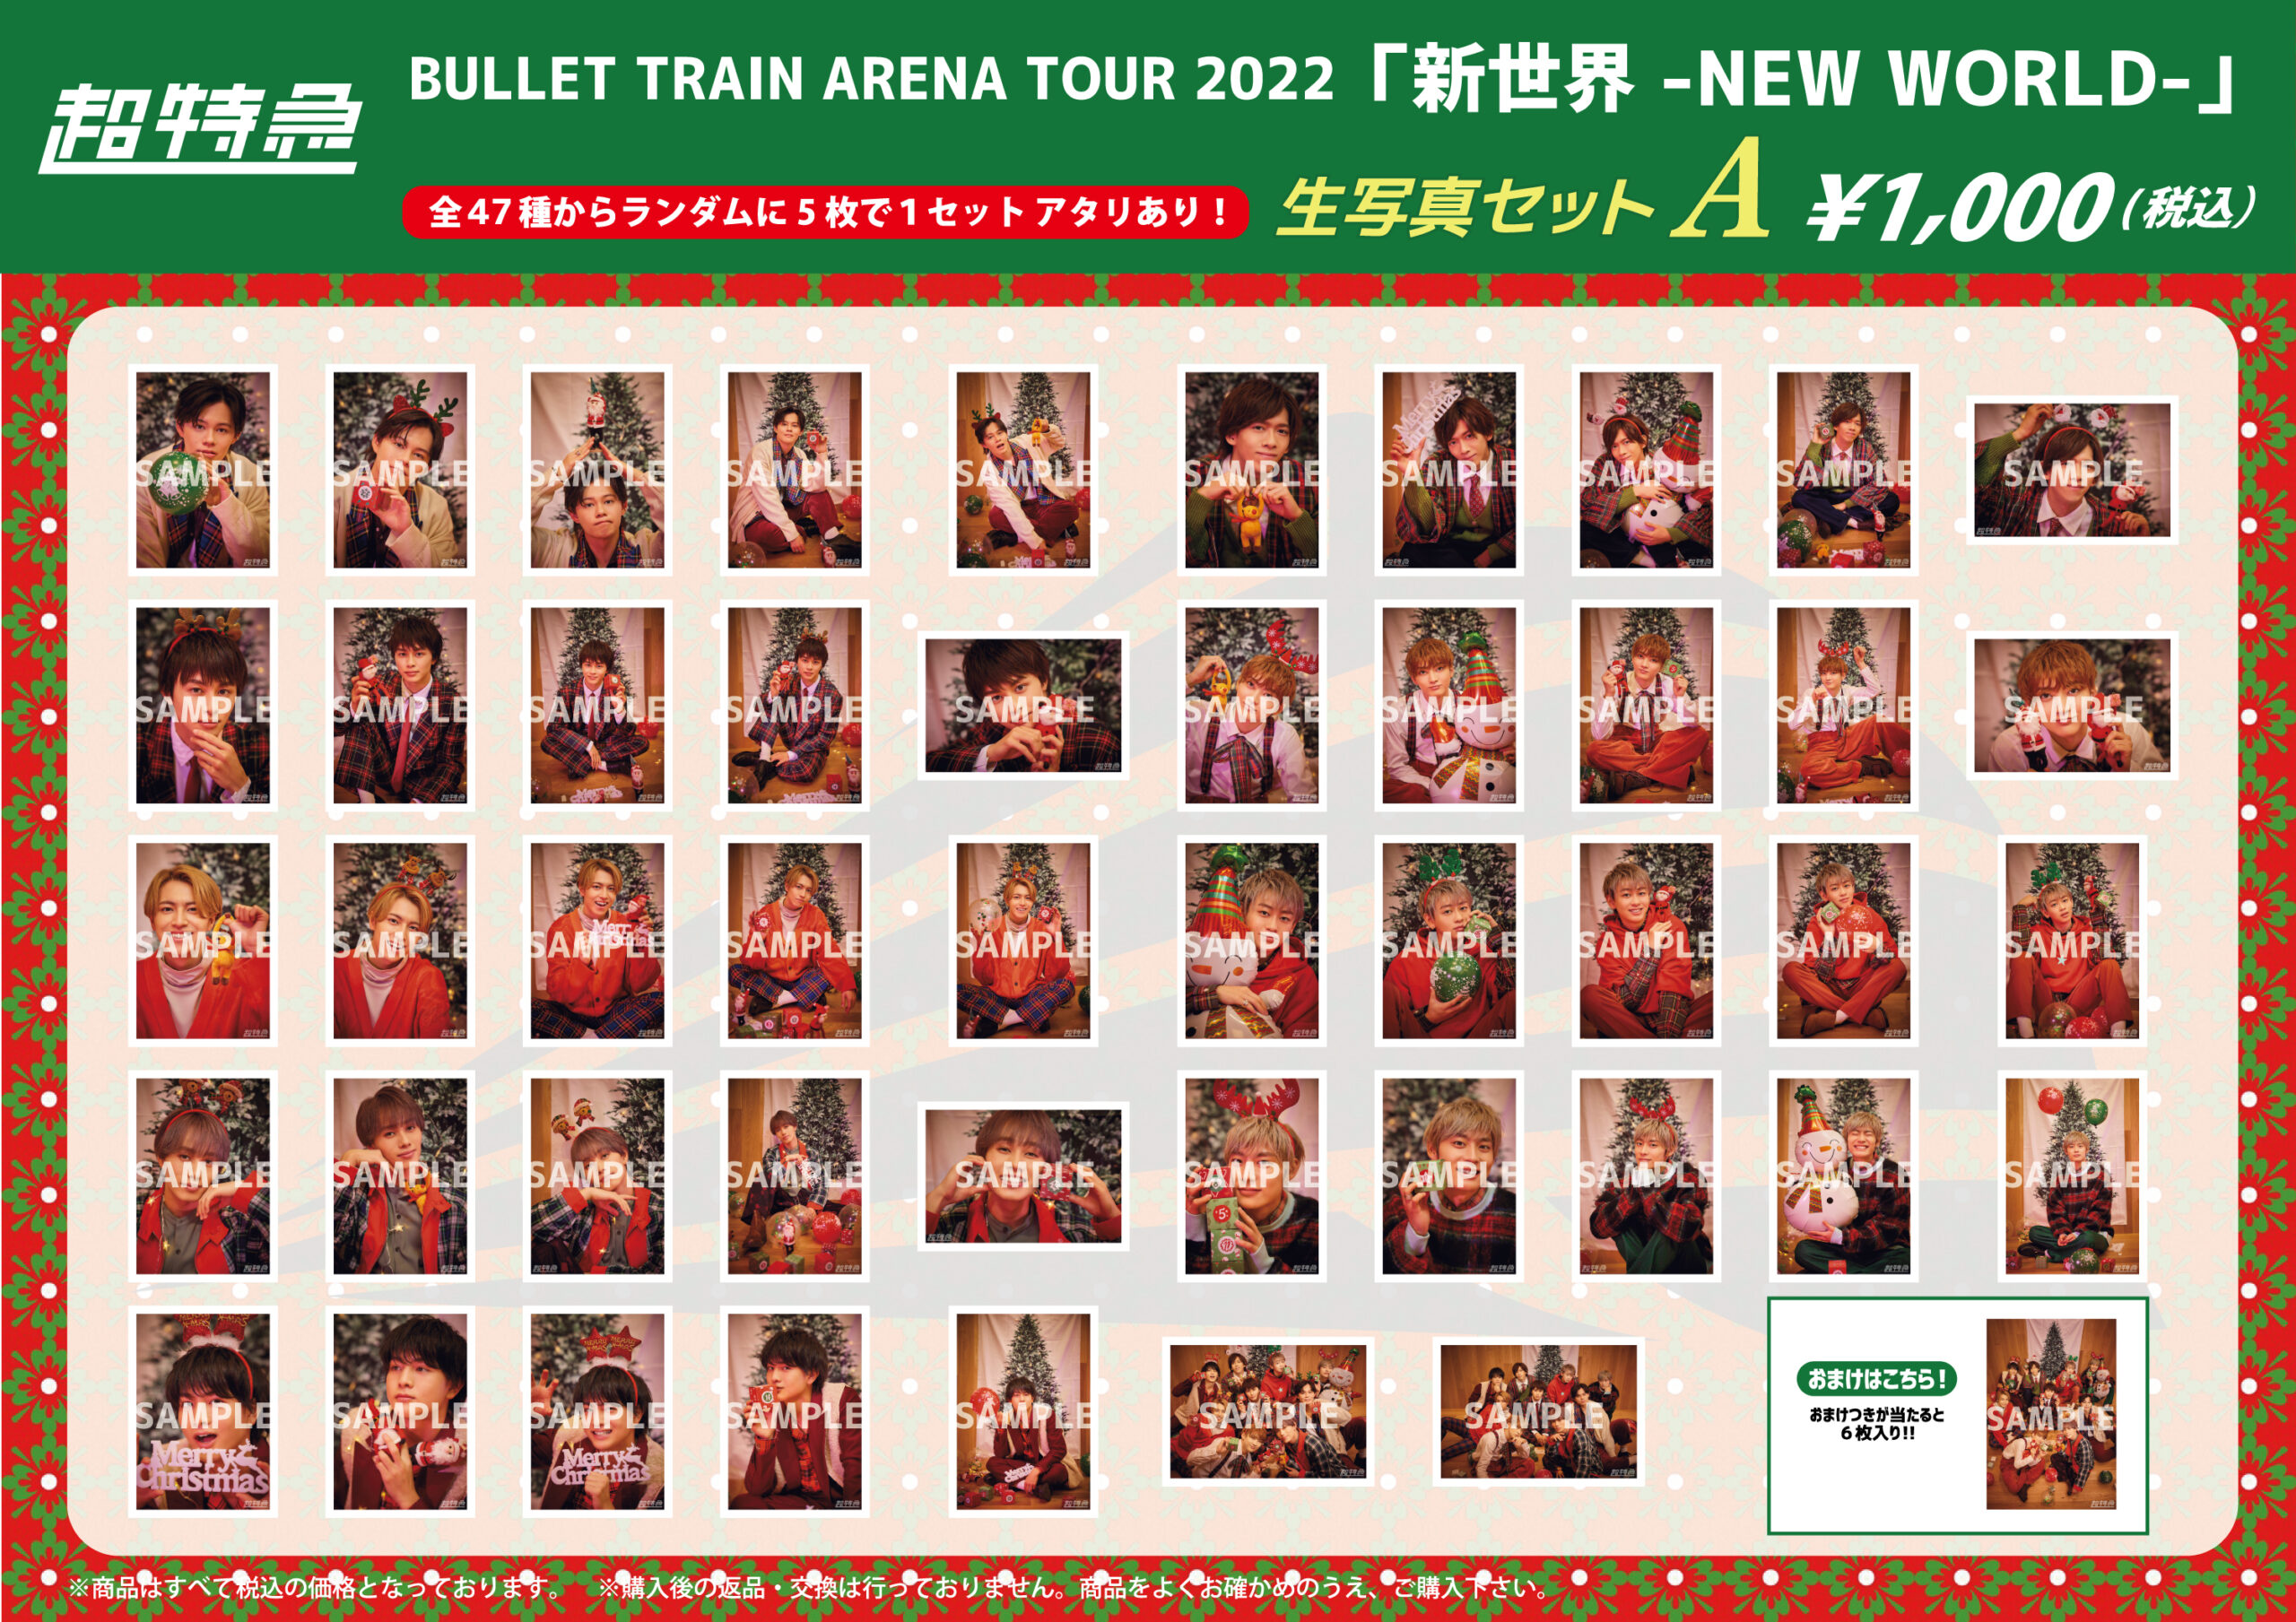 BULLET TRAIN ARENA TOUR 2022「新世界 -NEW WORLD-」オフィシャル